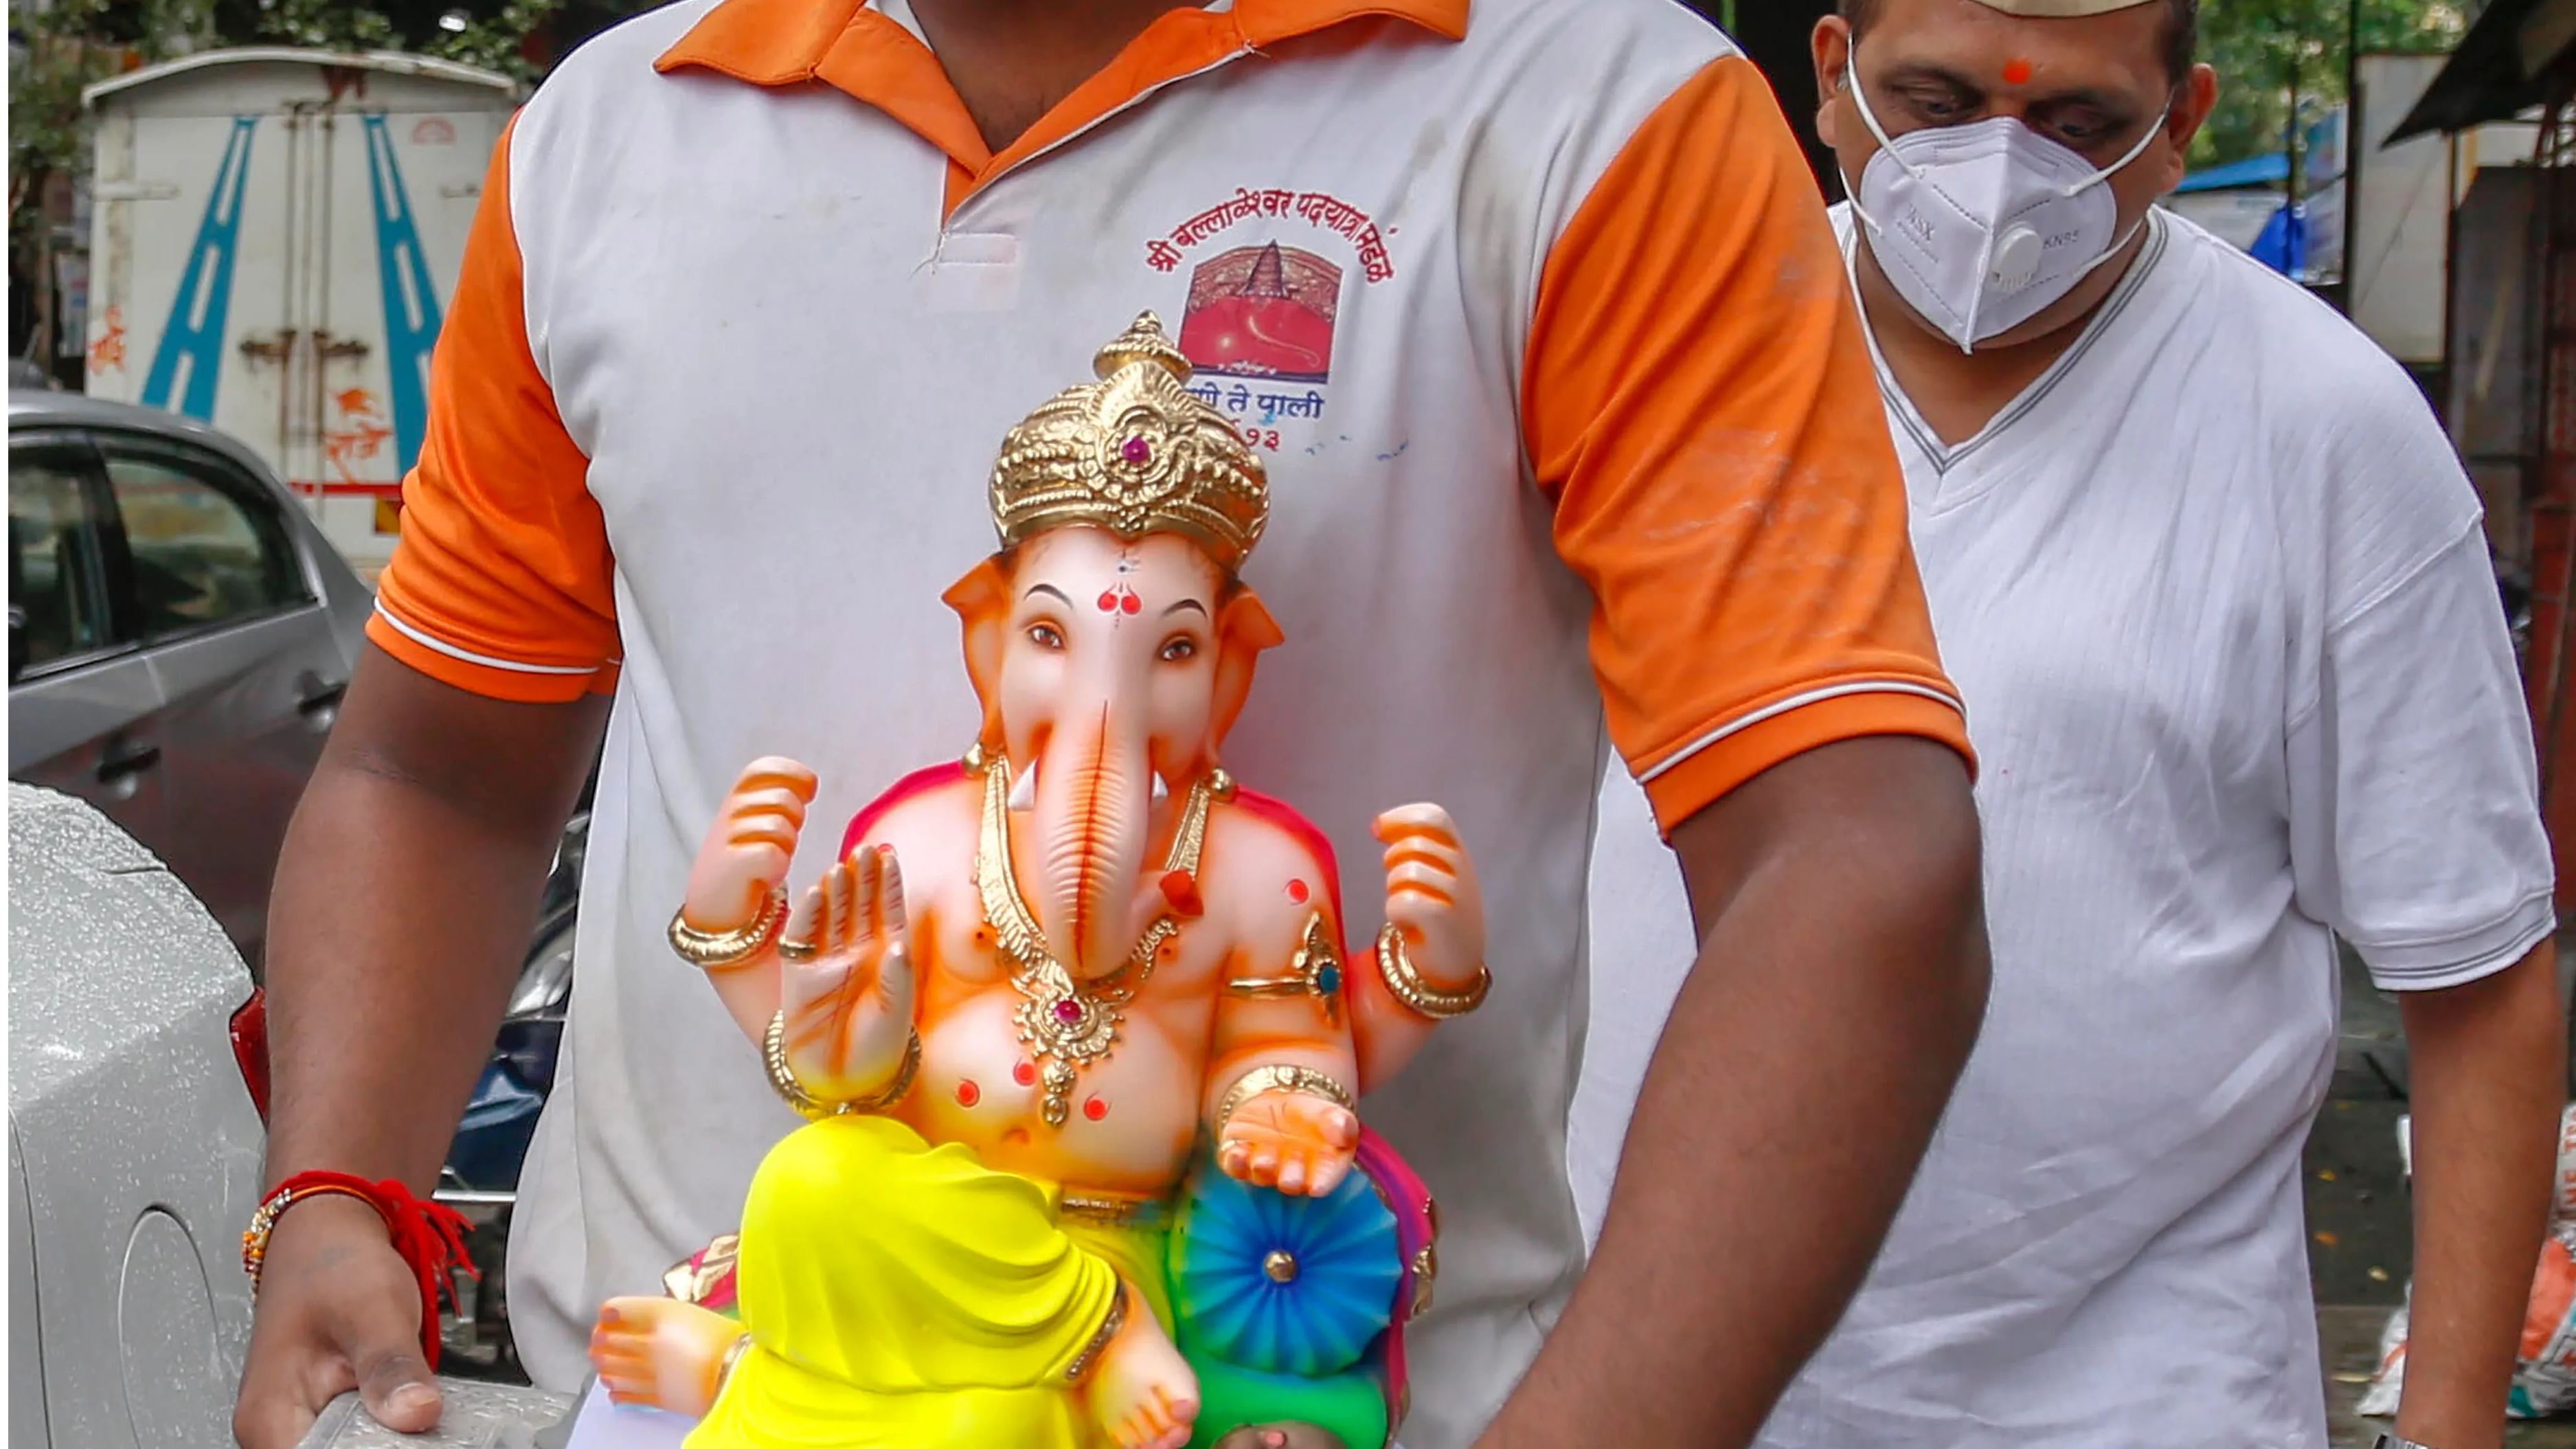 India celebrates Ganesh Chaturthi amid pandemic woes